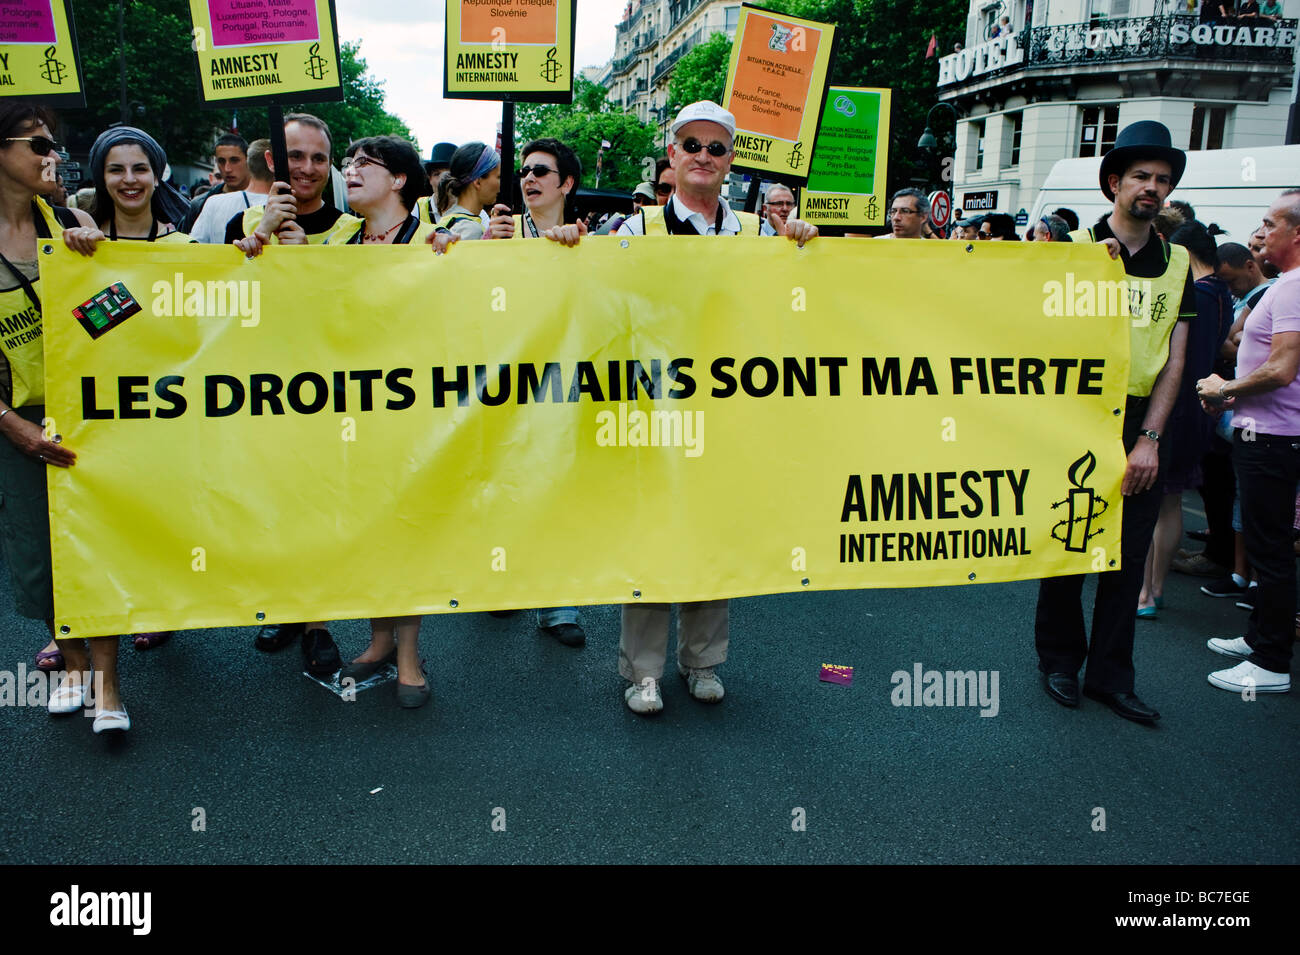 Paris France, événements publics Les gens célébrant "Gay Pride Parade' 'activistes' Amnesty International Holding signe de protestation, les droits de l'homme Bannière activis Banque D'Images